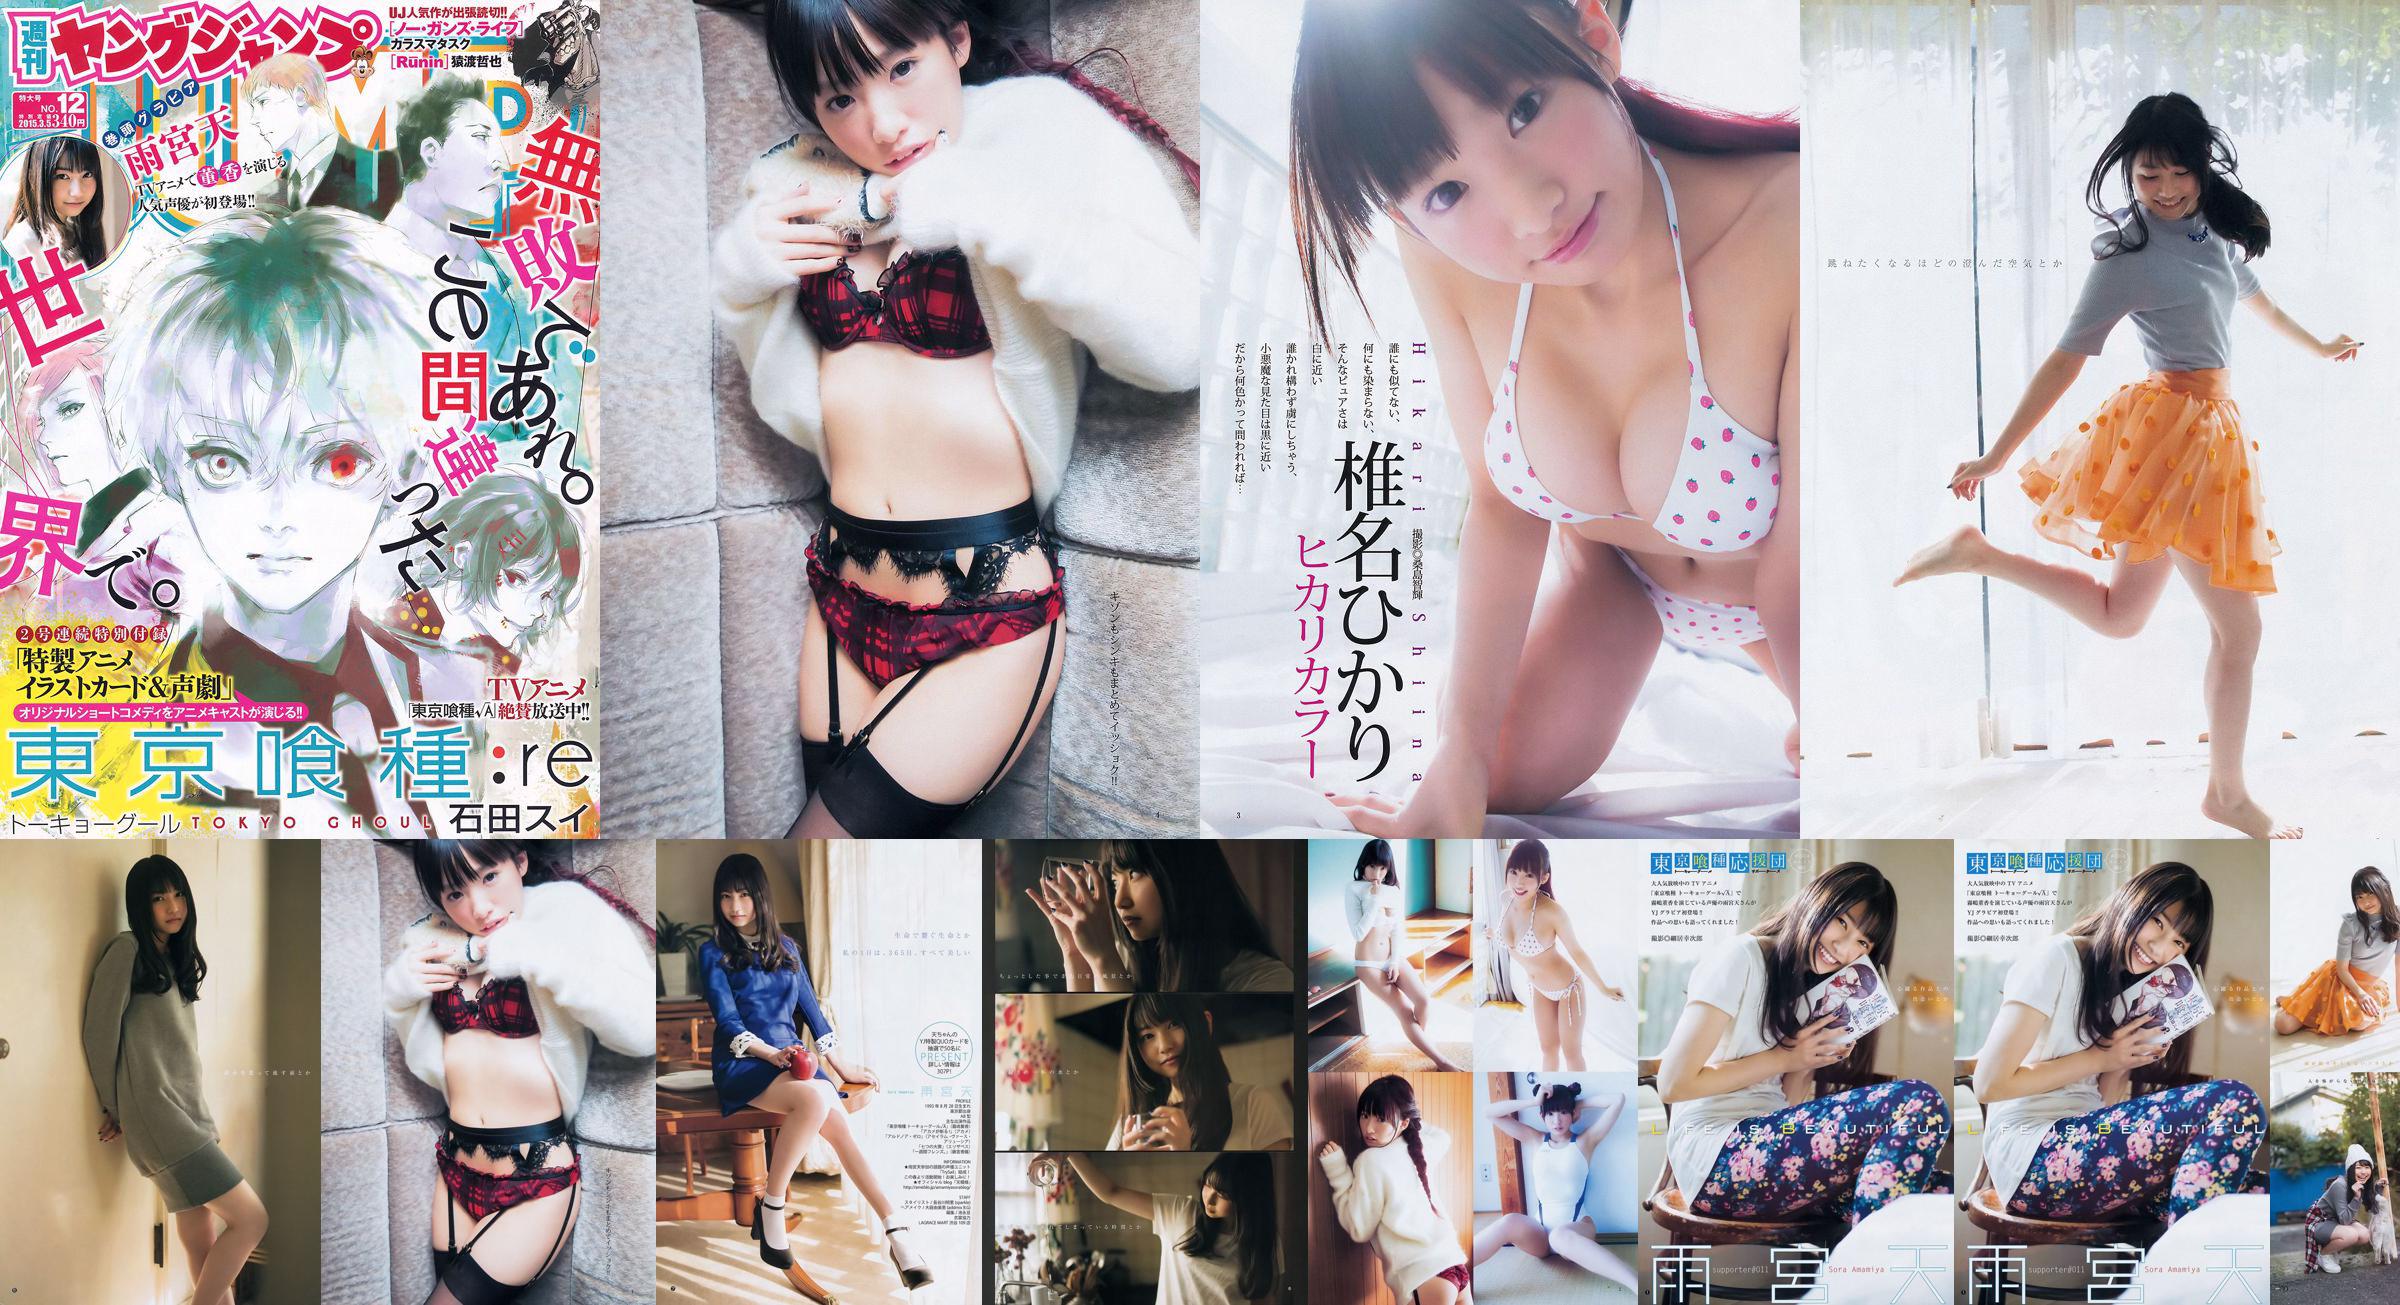 Amamiya Tian Shiina ひかり [Weekly Young Jump] 2015 No.12 Photo Magazine No.46512c Pagina 7